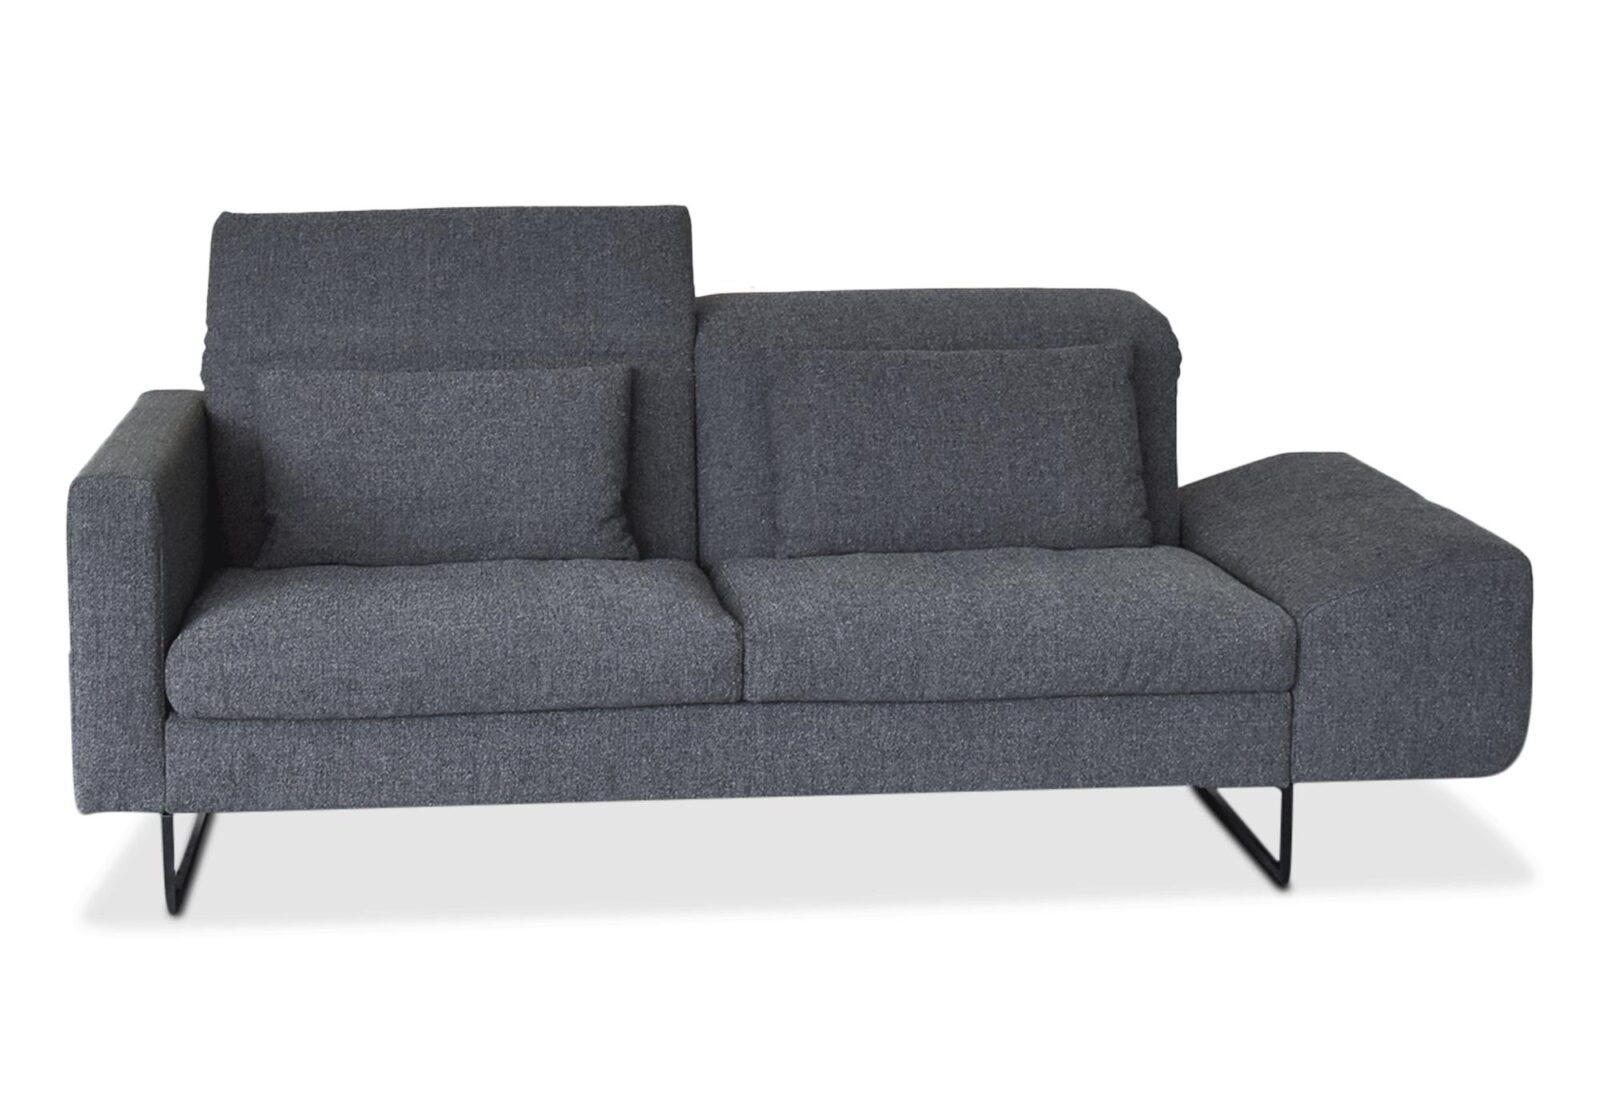 2er Sofa Embrace  Topqualität. Bezug: Stoff. Farbe: Graphit. Erhältlich bei Möbel Gallati.